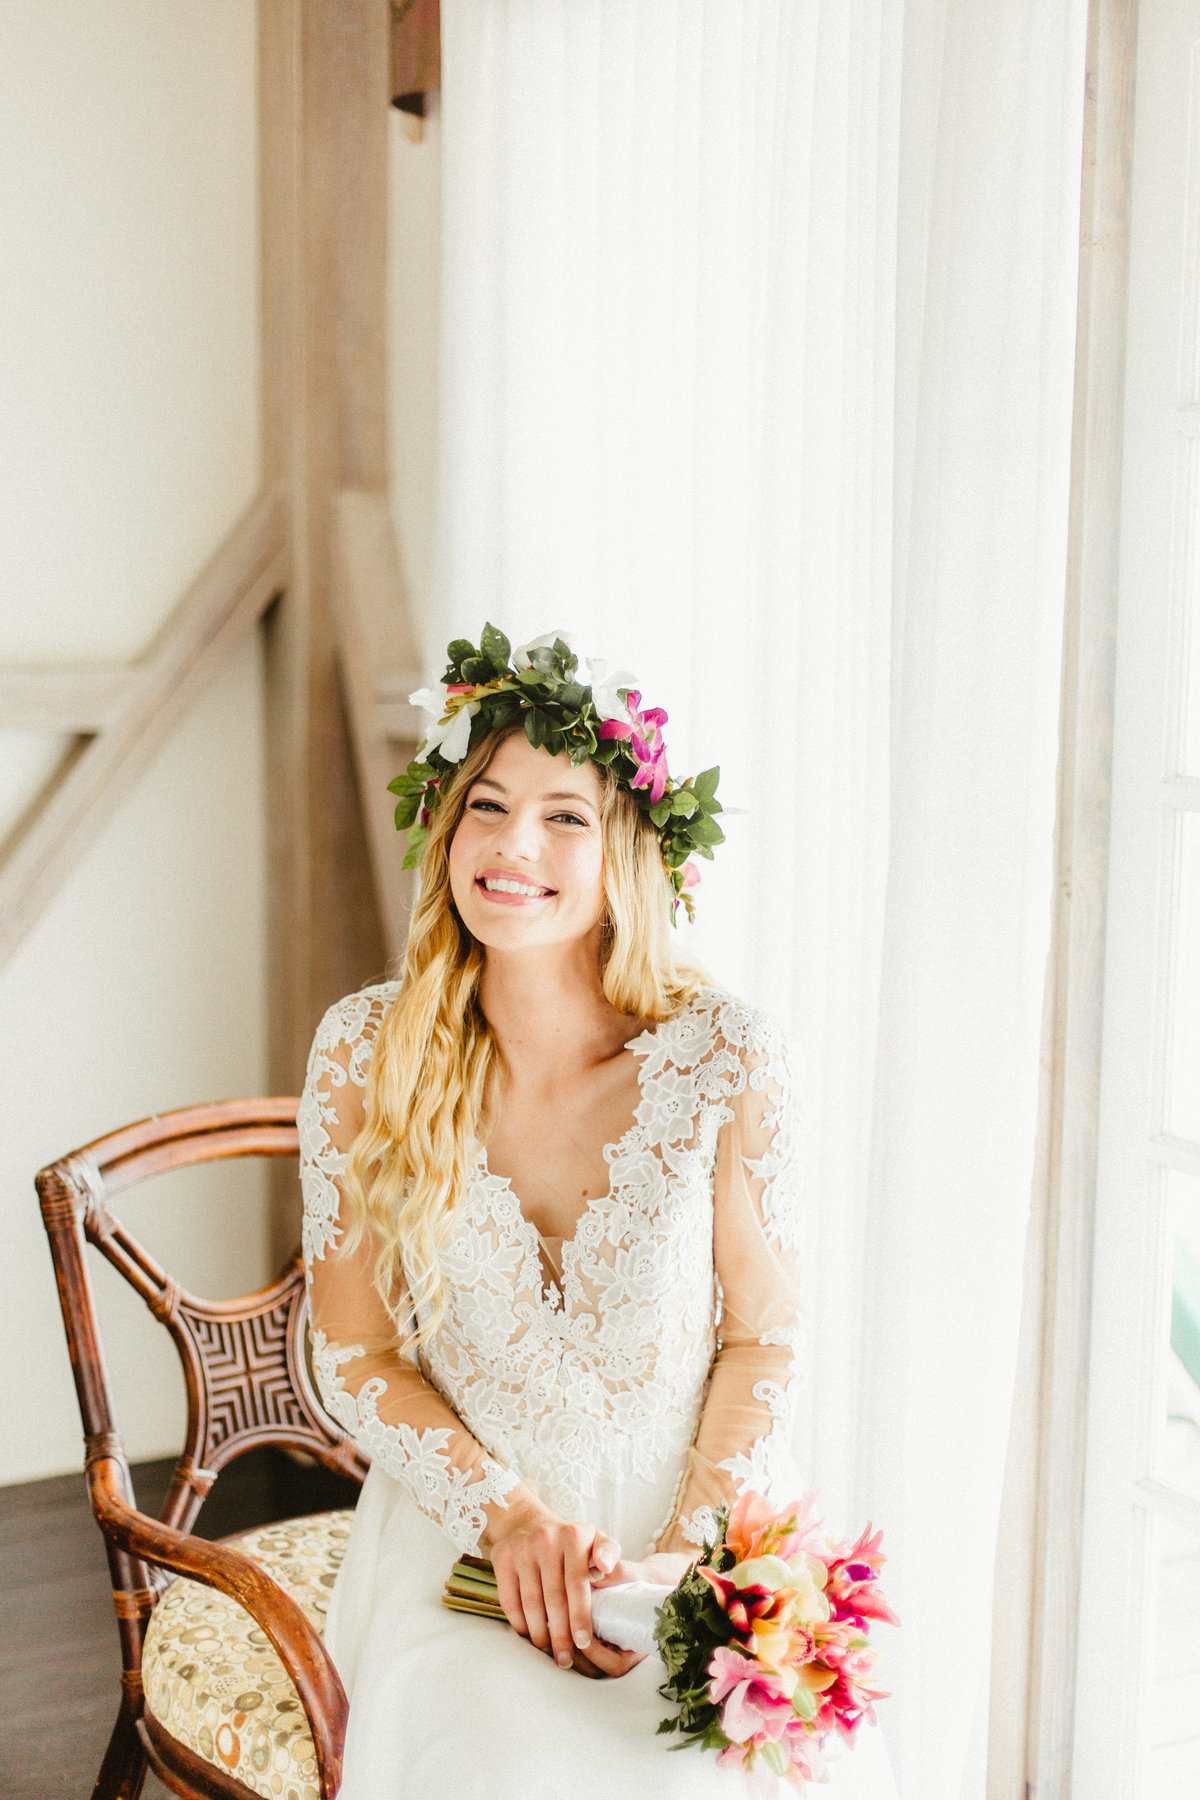 Candace Nicole Photography | Maryland Wedding & Portrait Photographer